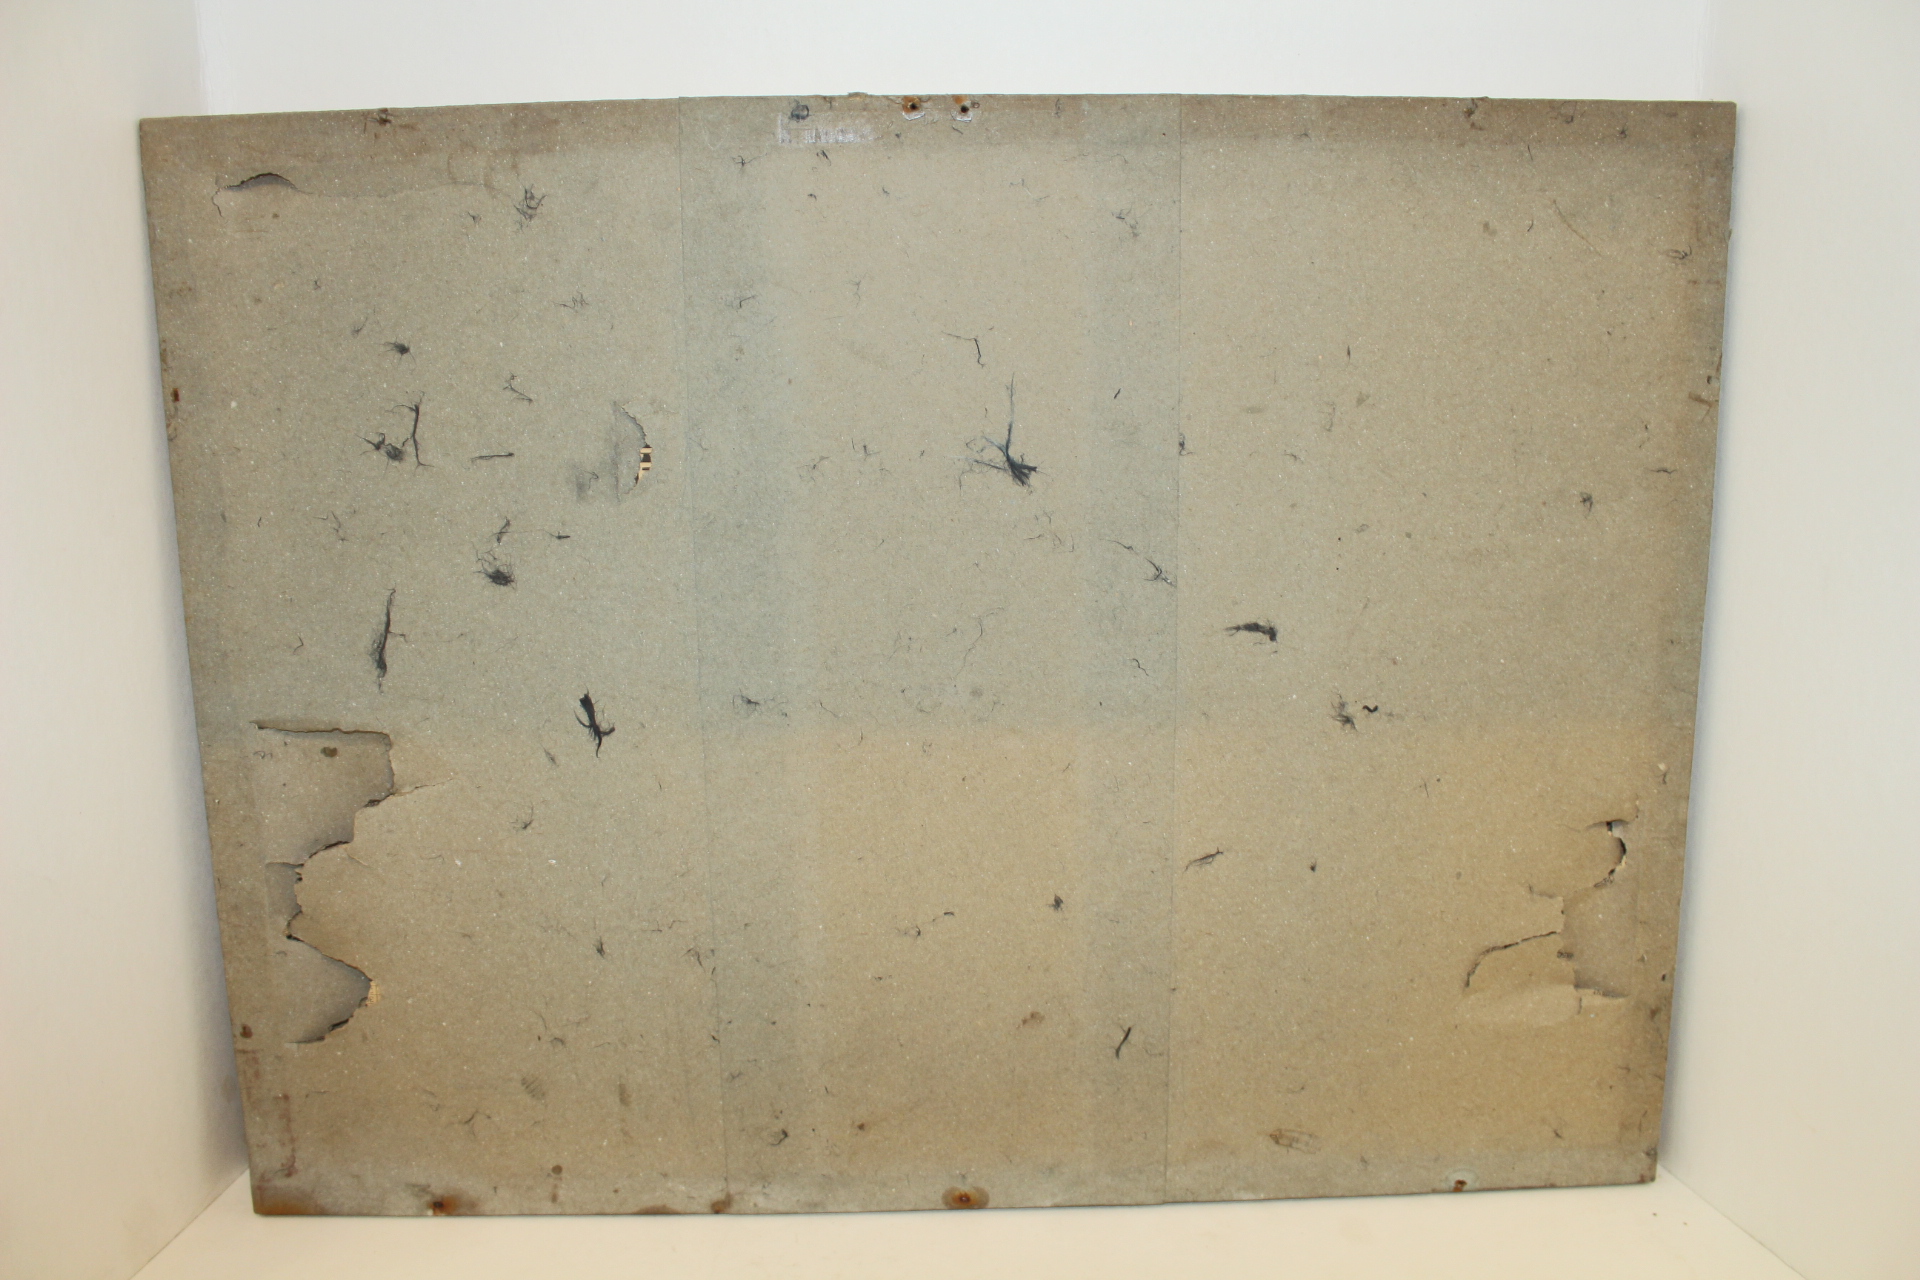 화첩에서 분리후 배접된 고성군 동십리 해금강(海金剛) 그림